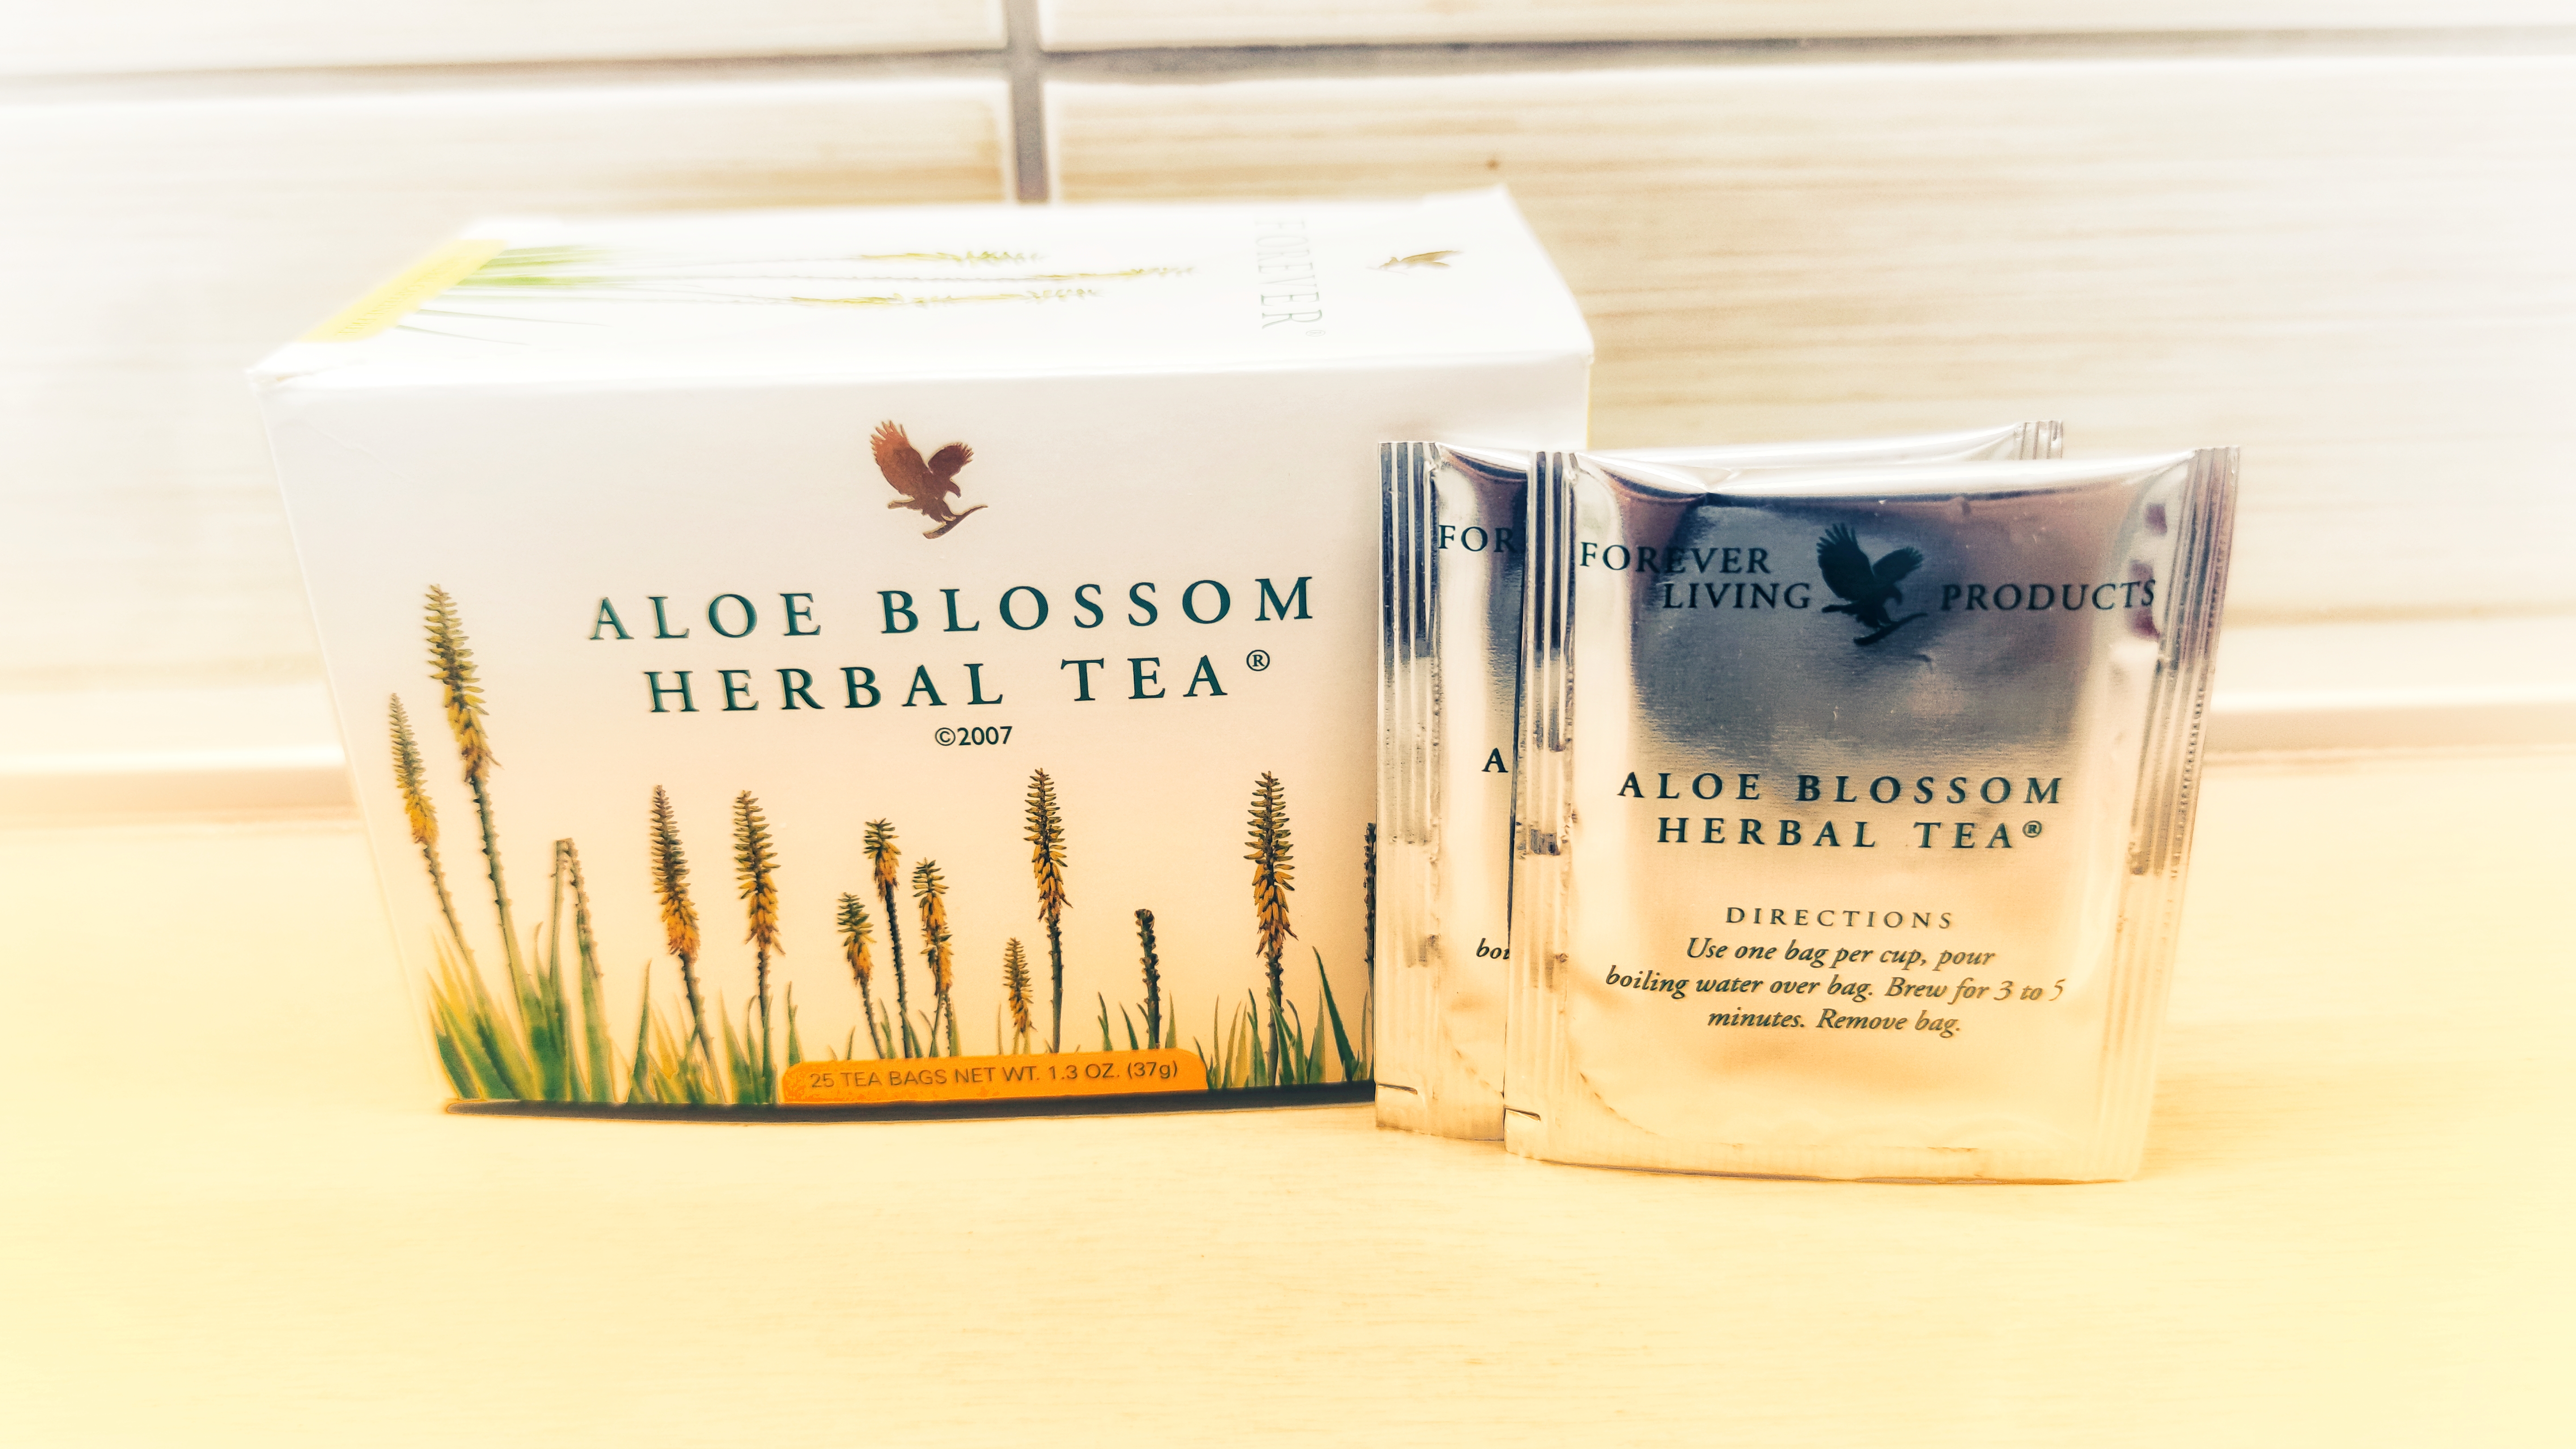 Aloe Blossom Herbal Tea.jpeg